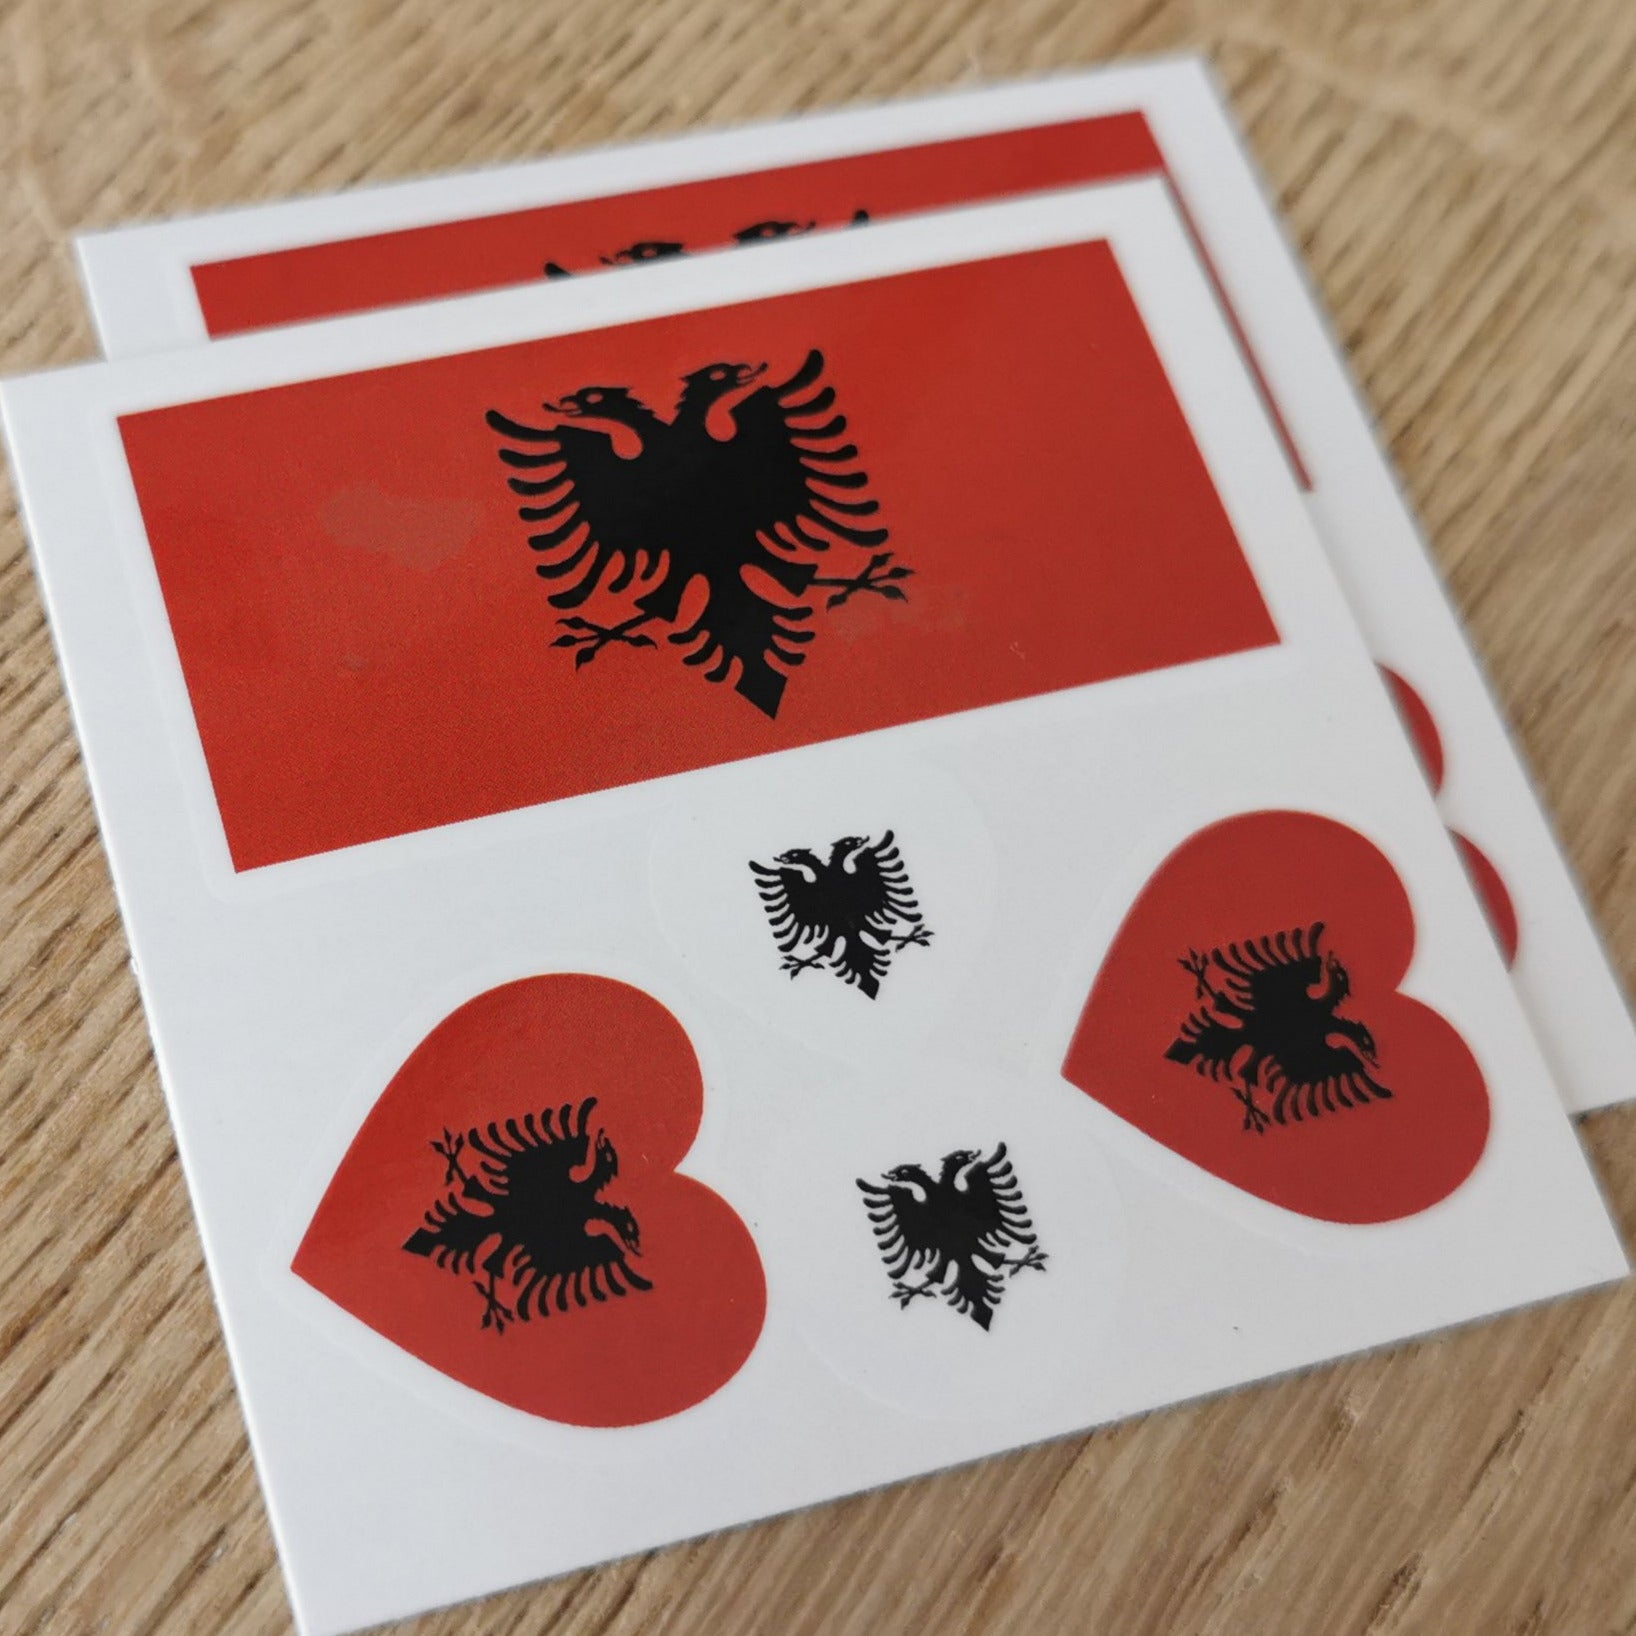 Albanian Eagle Heart Tatuazhe e përkohëshme - Temporary tattoo (set of 2 + 1 FREE)